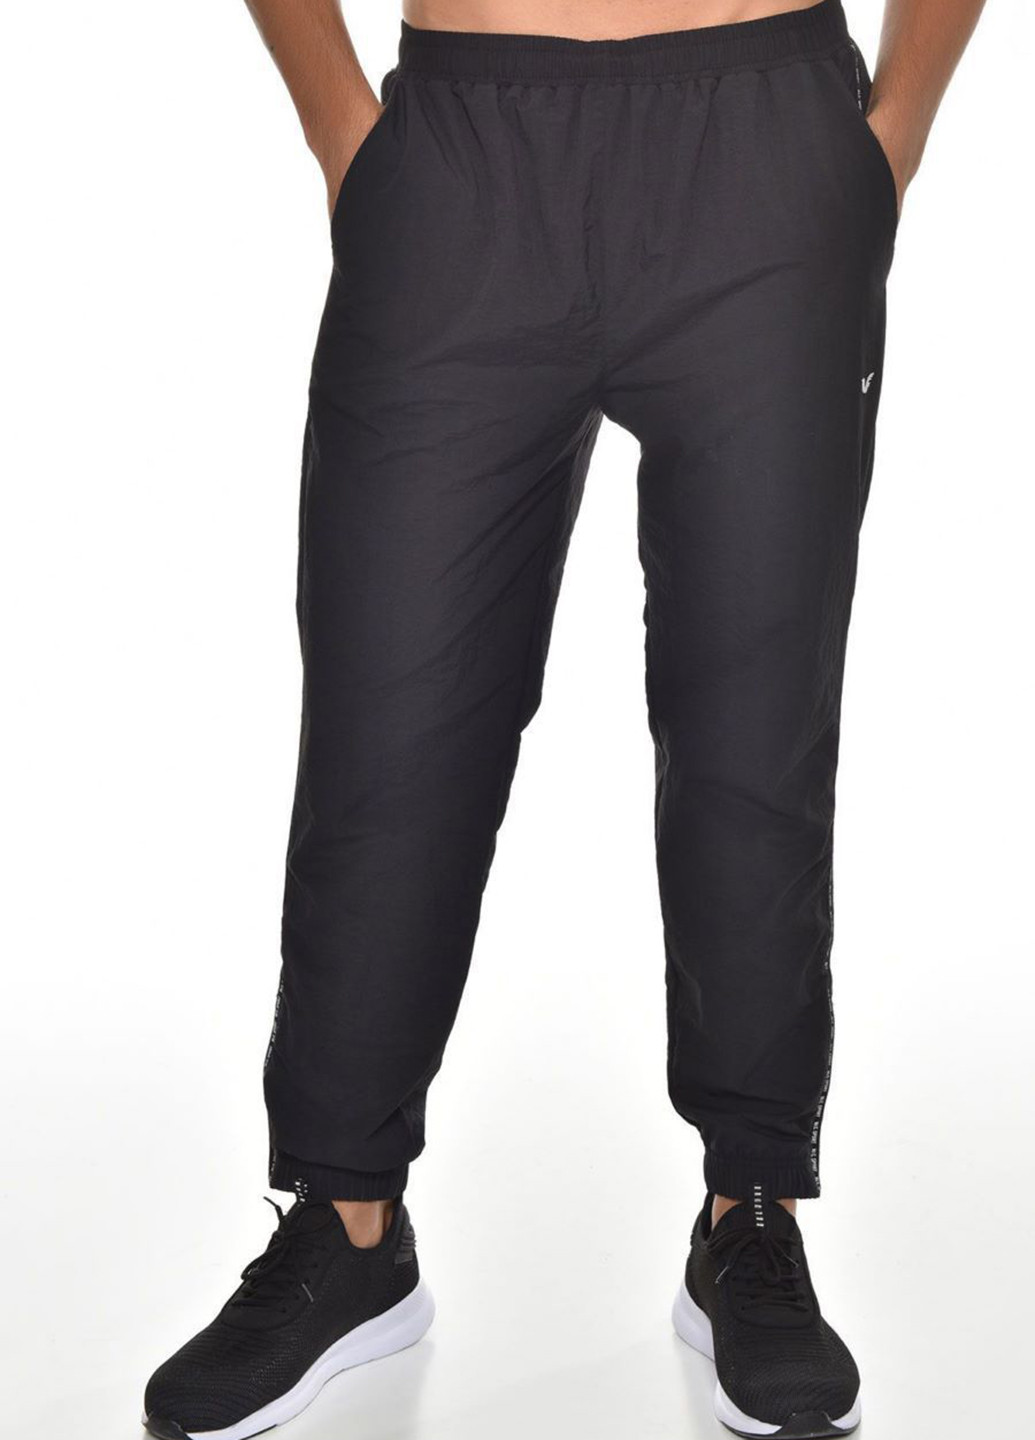 Черный демисезонный костюм (кофта, брюки) брючный Bilcee